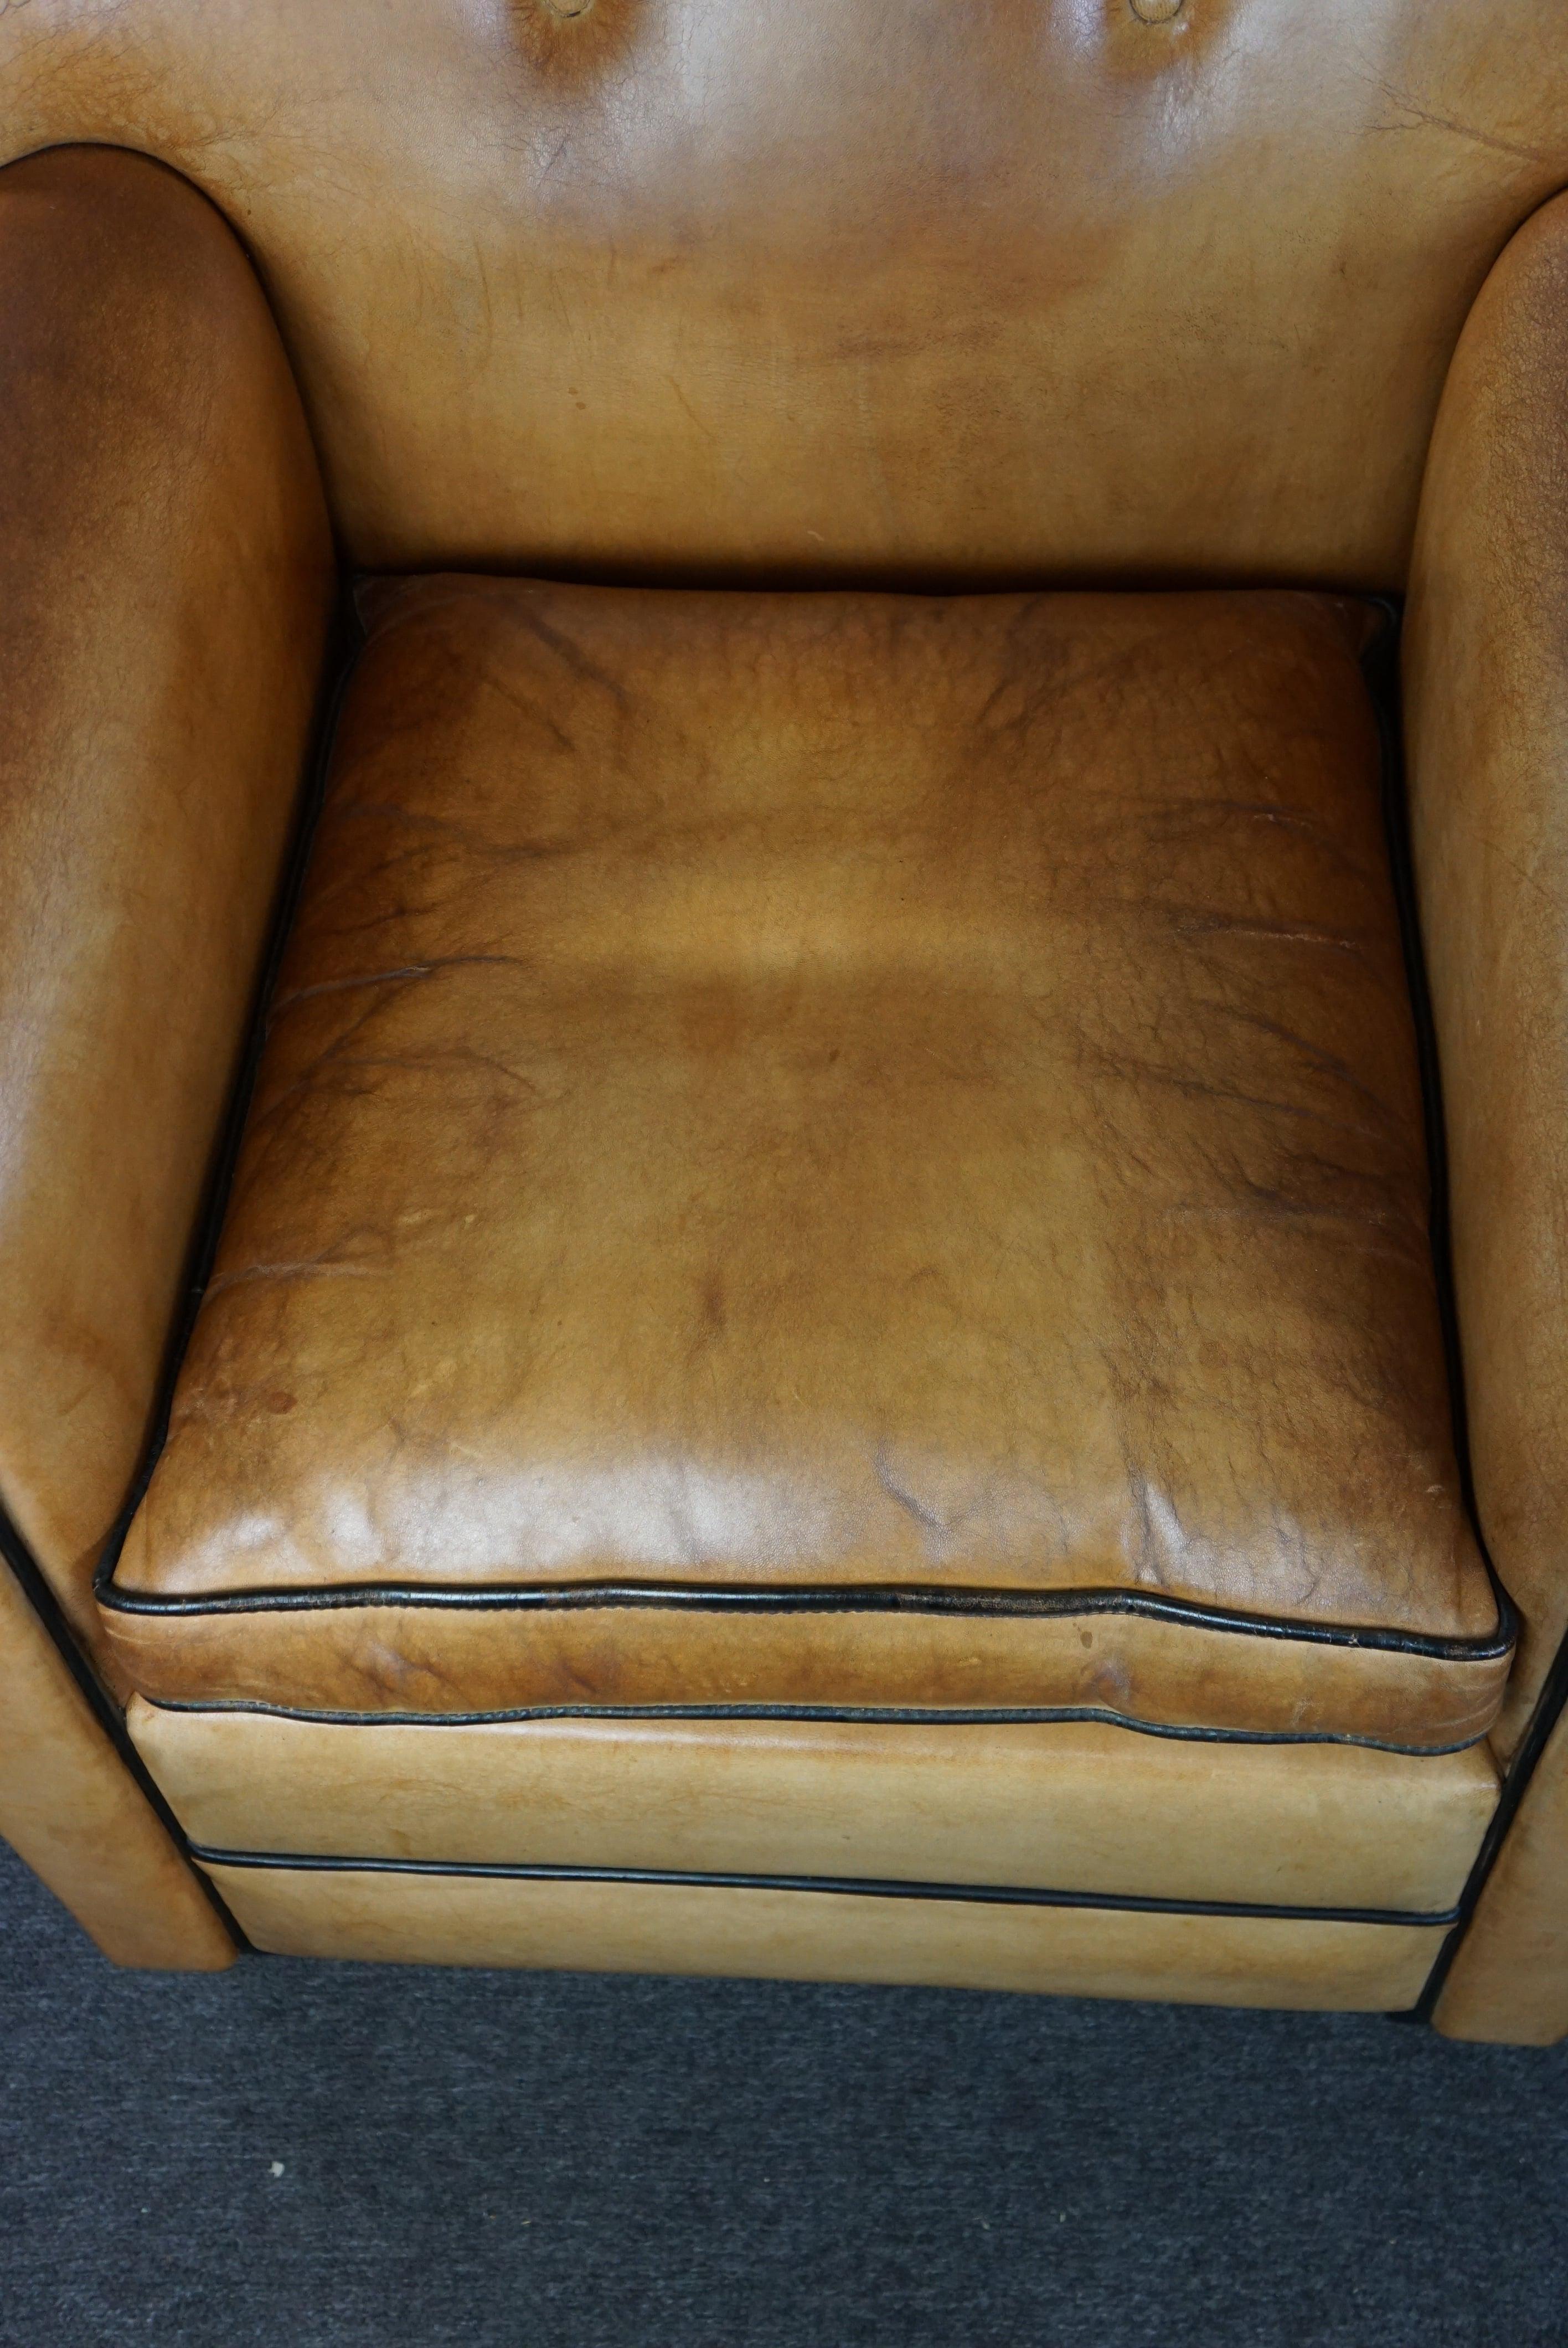 Nous vous proposons ce fantastique ensemble de deux magnifiques fauteuils en cuir de mouton Bart van Bekhoven aux couleurs chaudes. Ces fauteuils design uniques et très recherchés de Bart van Bekhoven sont fabriqués en cuir de mouton de première